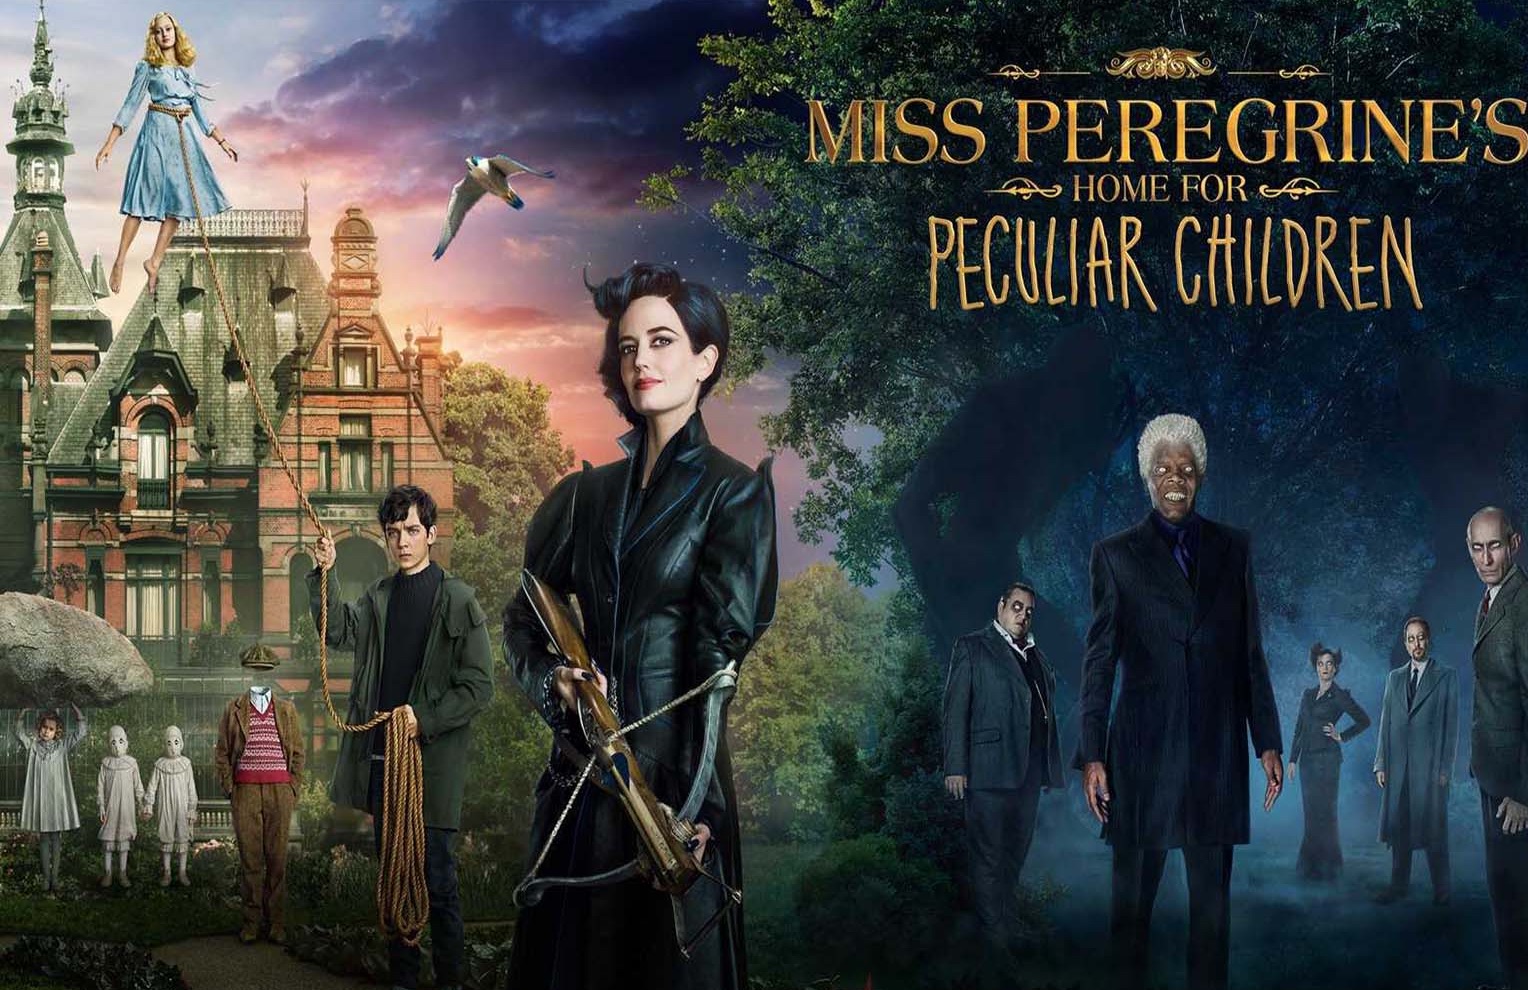 Дом миссис пилигрим. Тим бёртон дом странных детей. Miss Peregrine's Home for peculiar children (2016). Дом странных детей Мисс Перегрин 2016 обложка.